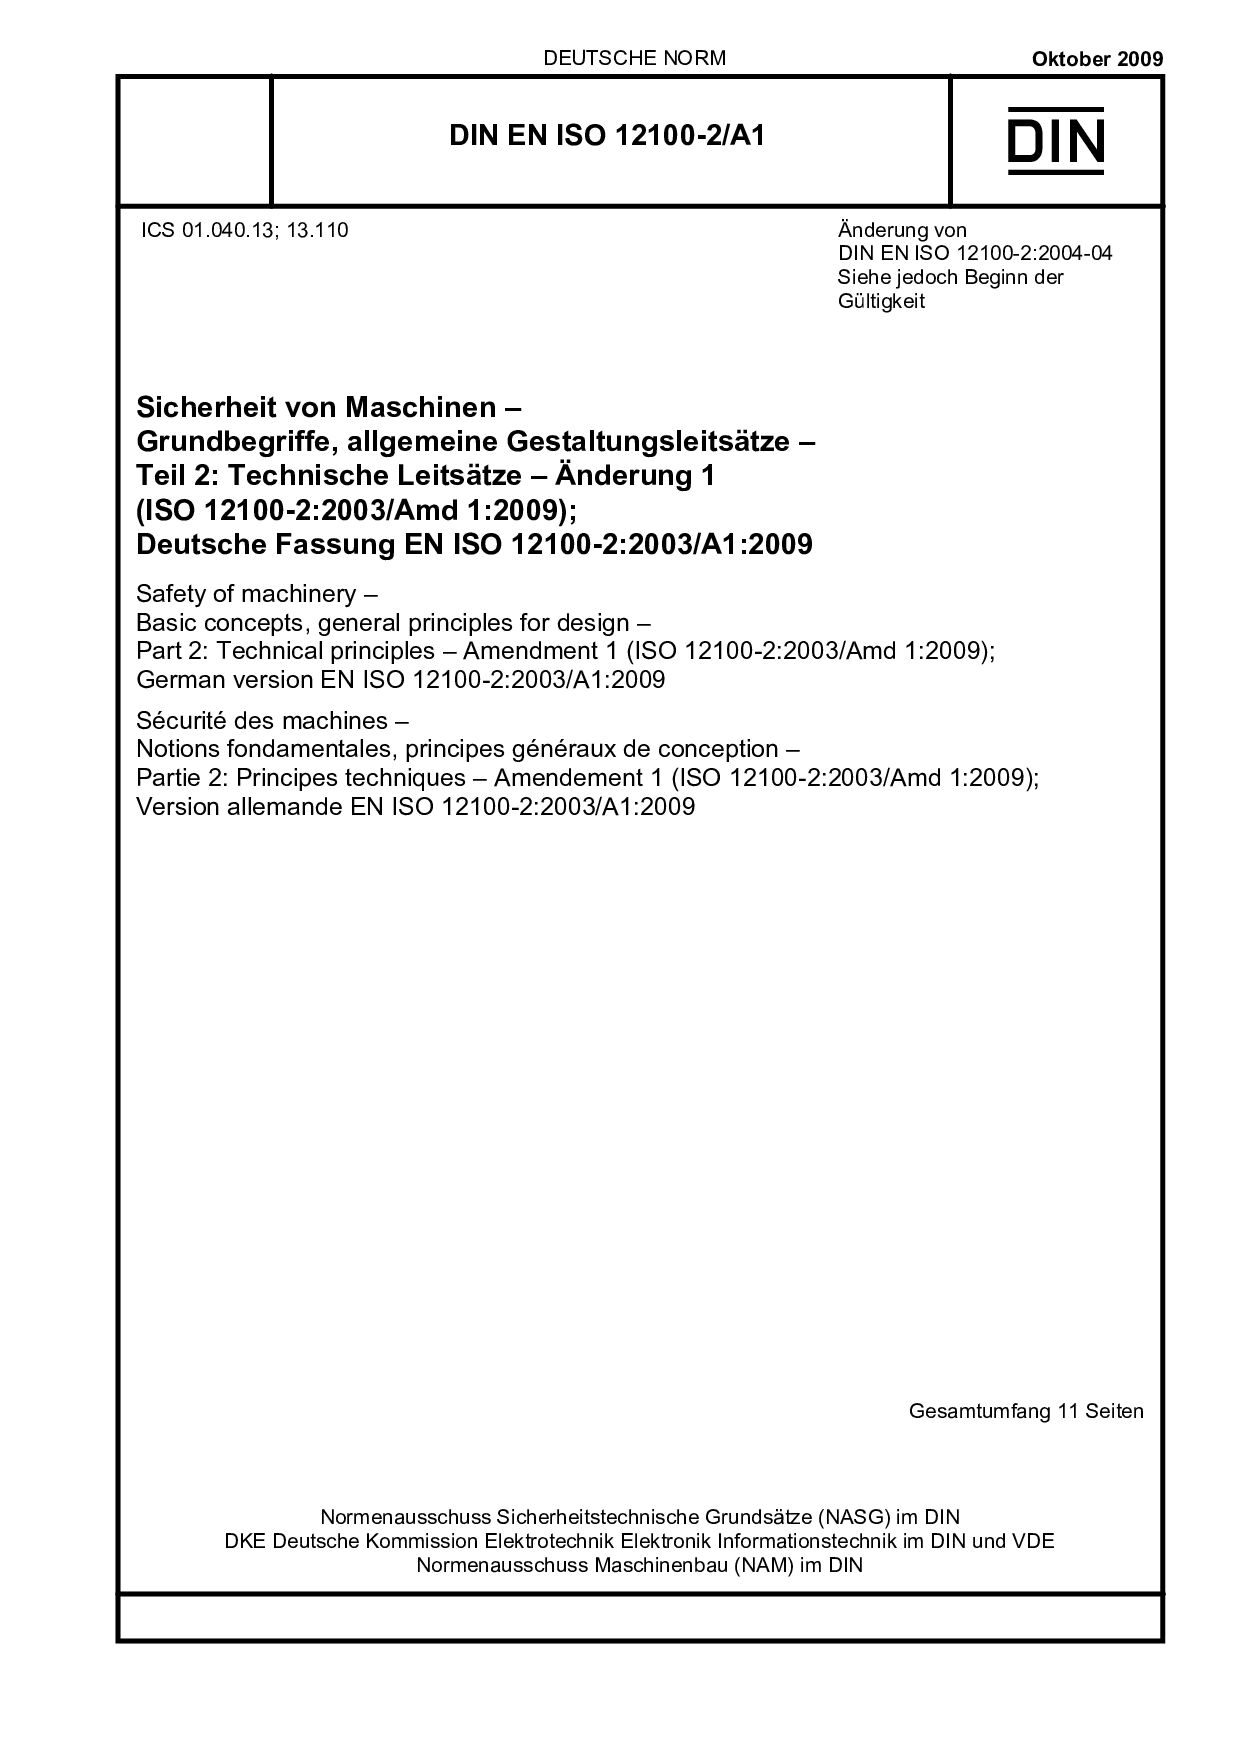 DIN EN ISO 12100-2/A1:2009